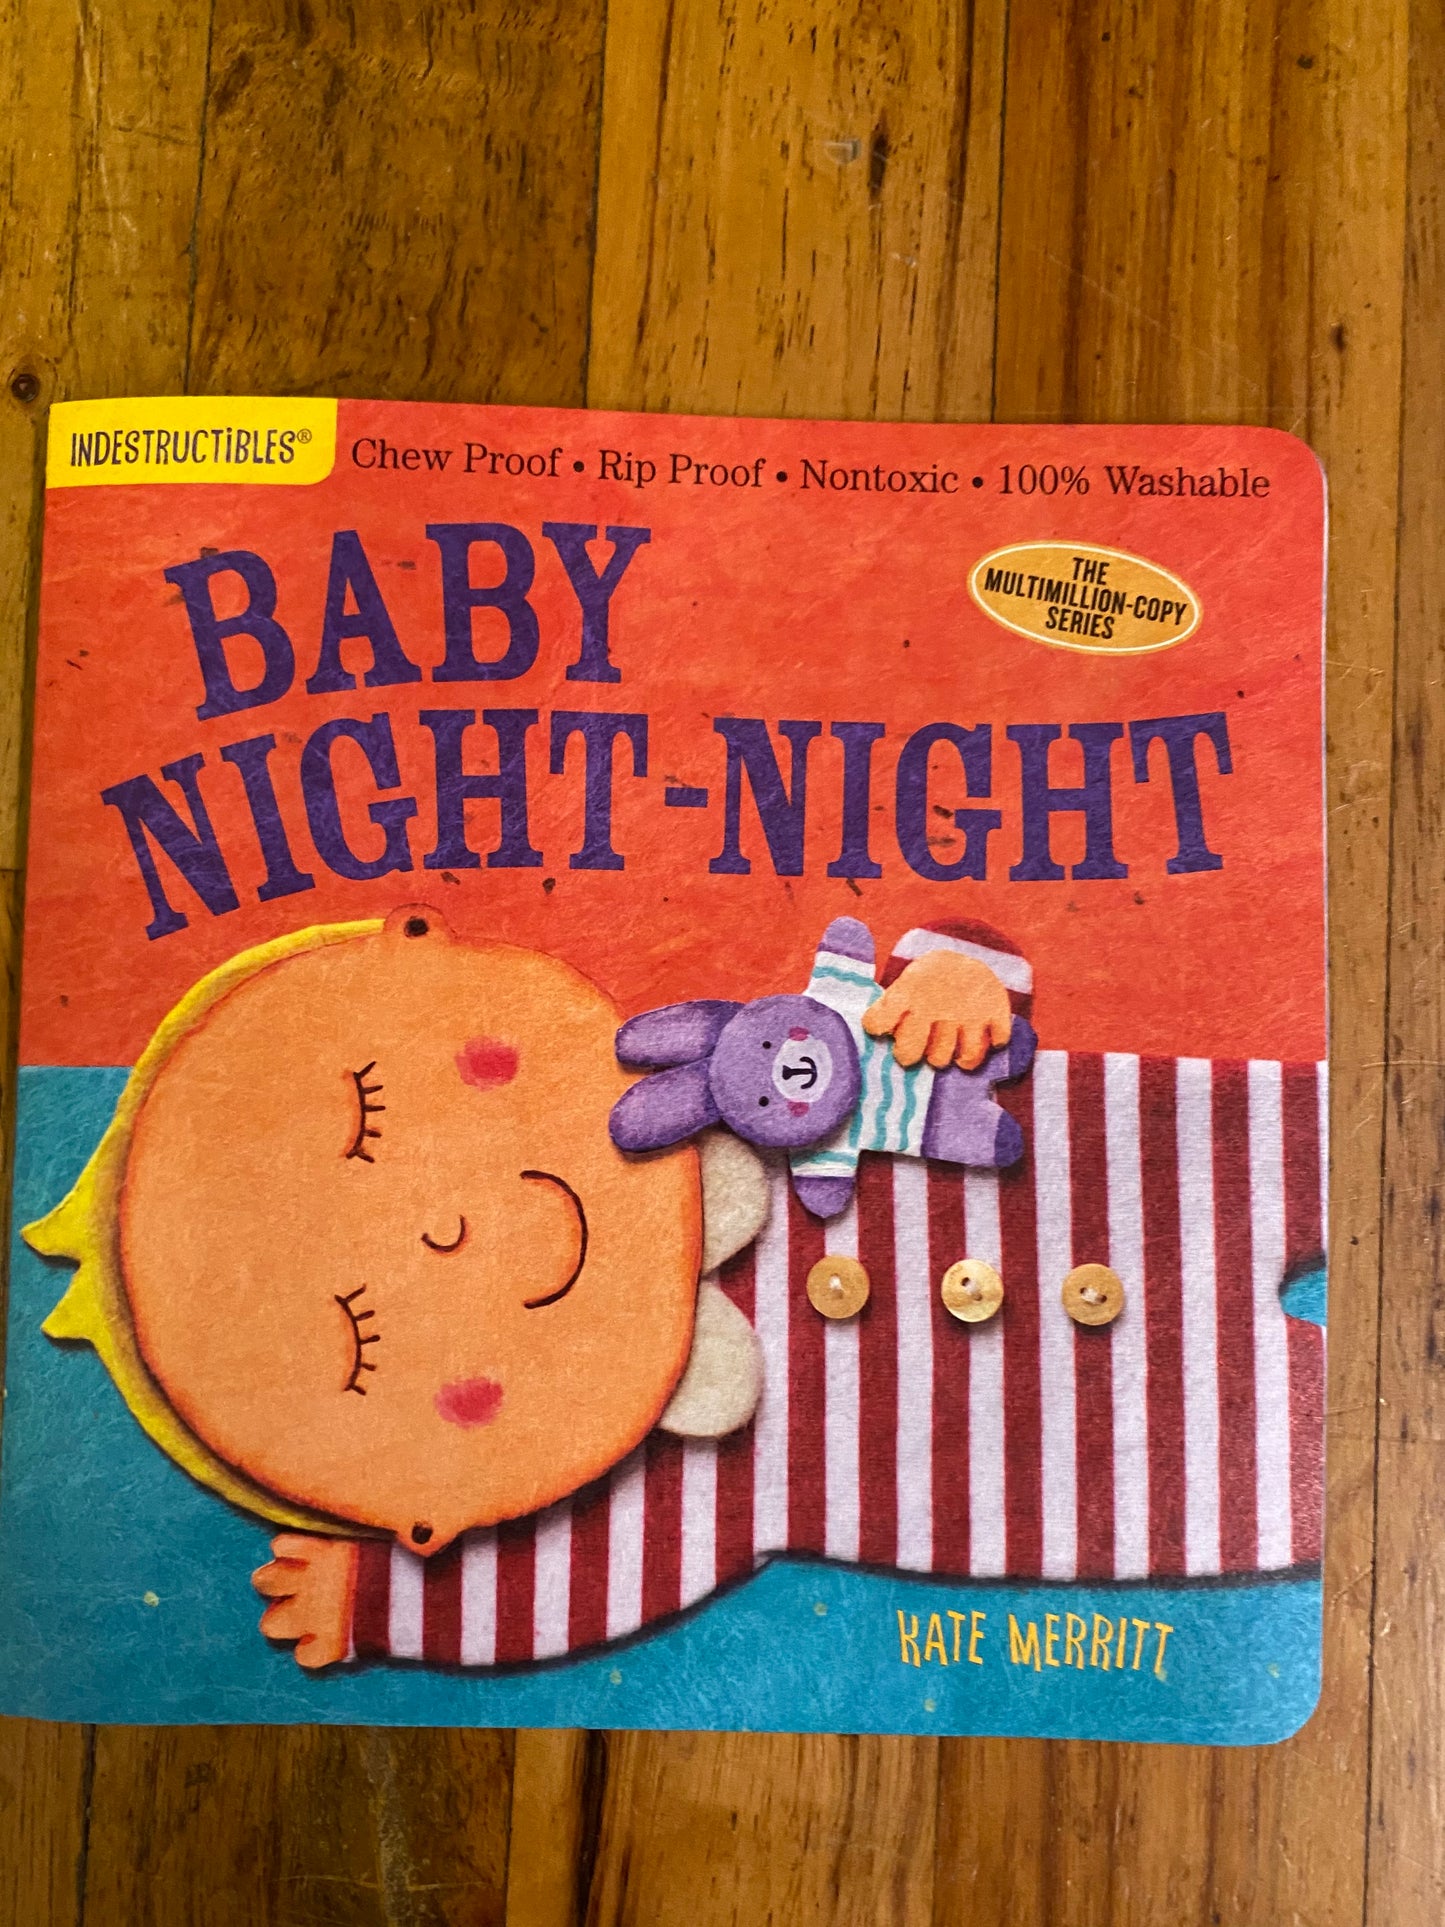 INDESTRUCTIBLES CHILDREN BOOK/BABY NIGHT NIGHT